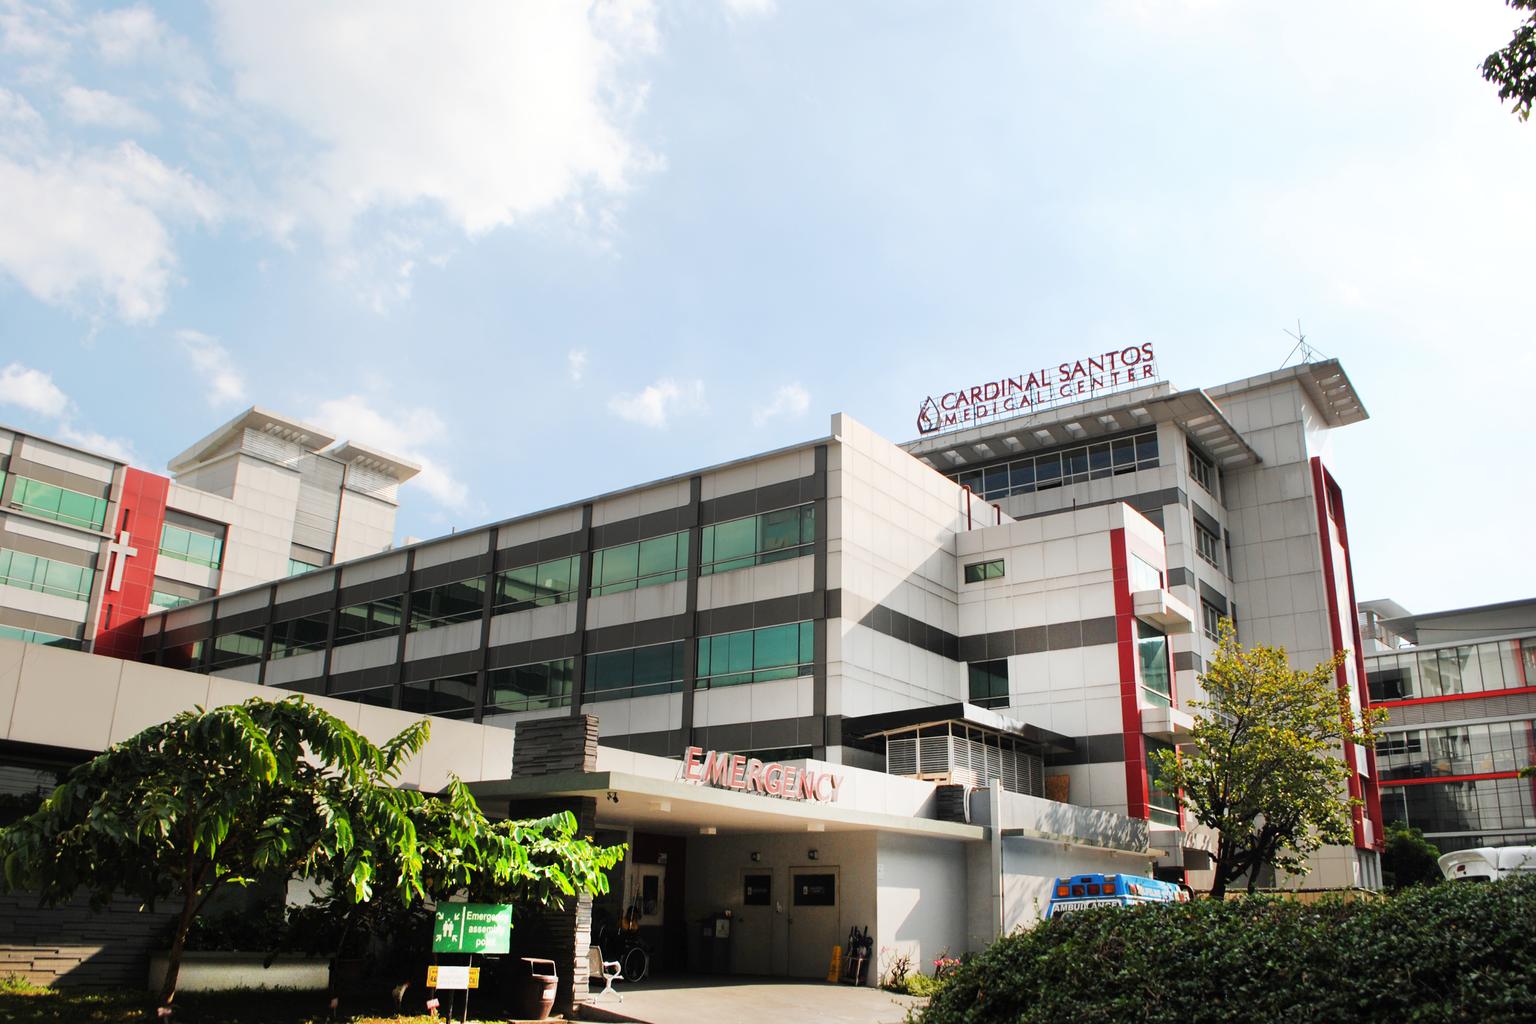 Cardinal Santos Medical Center building facade